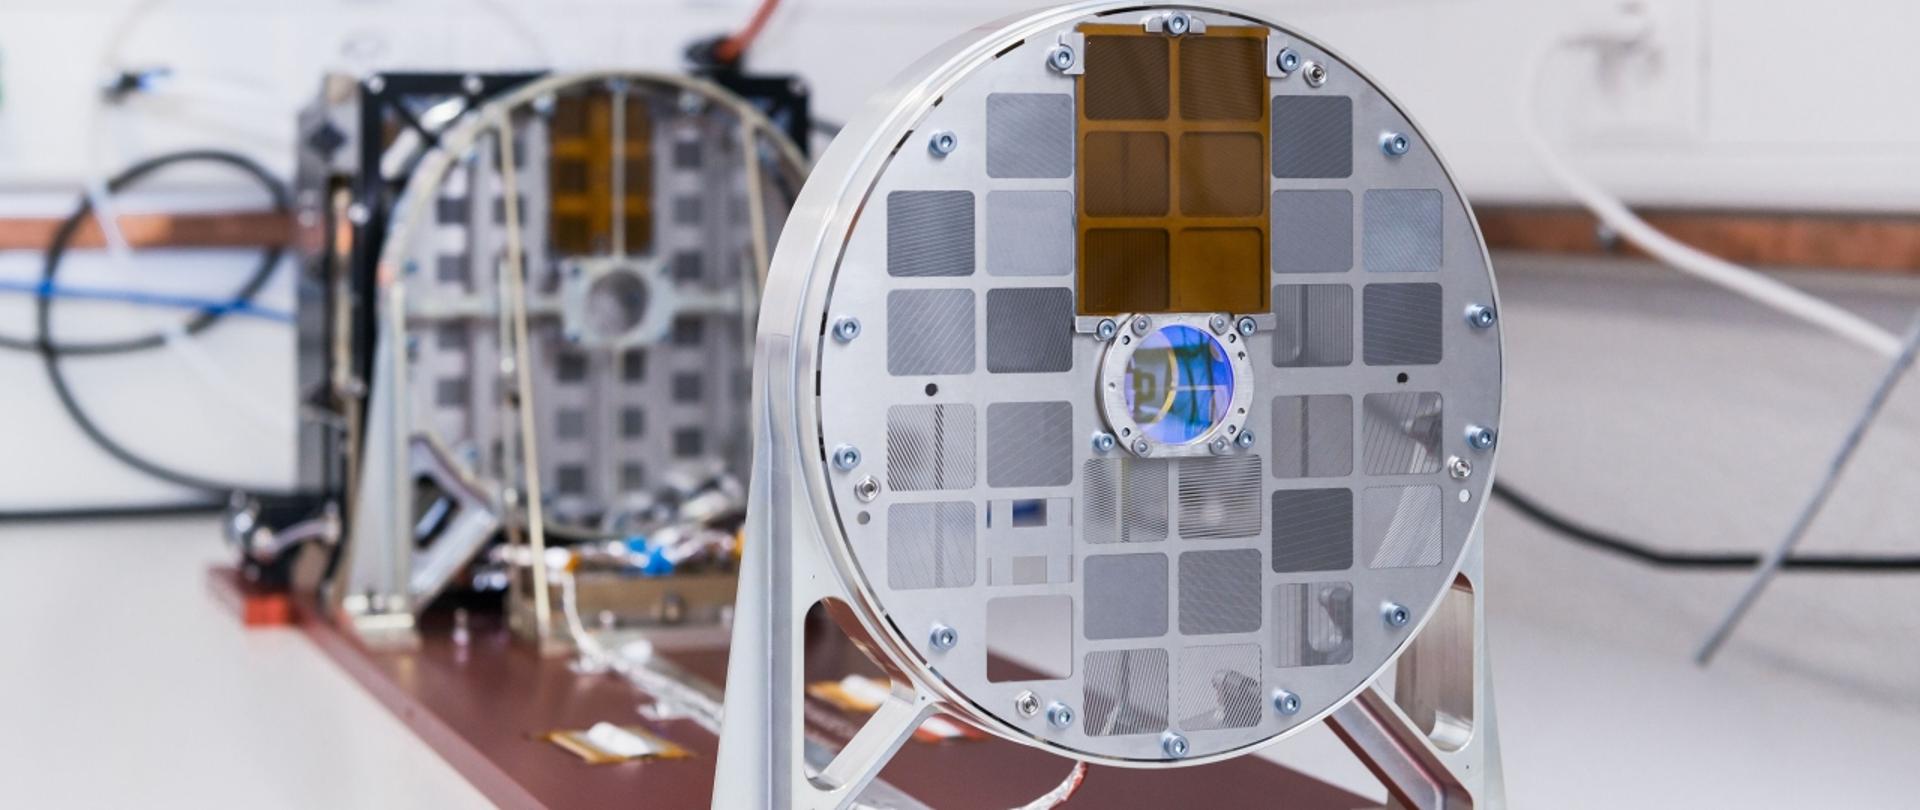 Sonda Solar Orbiter wewnątrz białego pomieszczenia